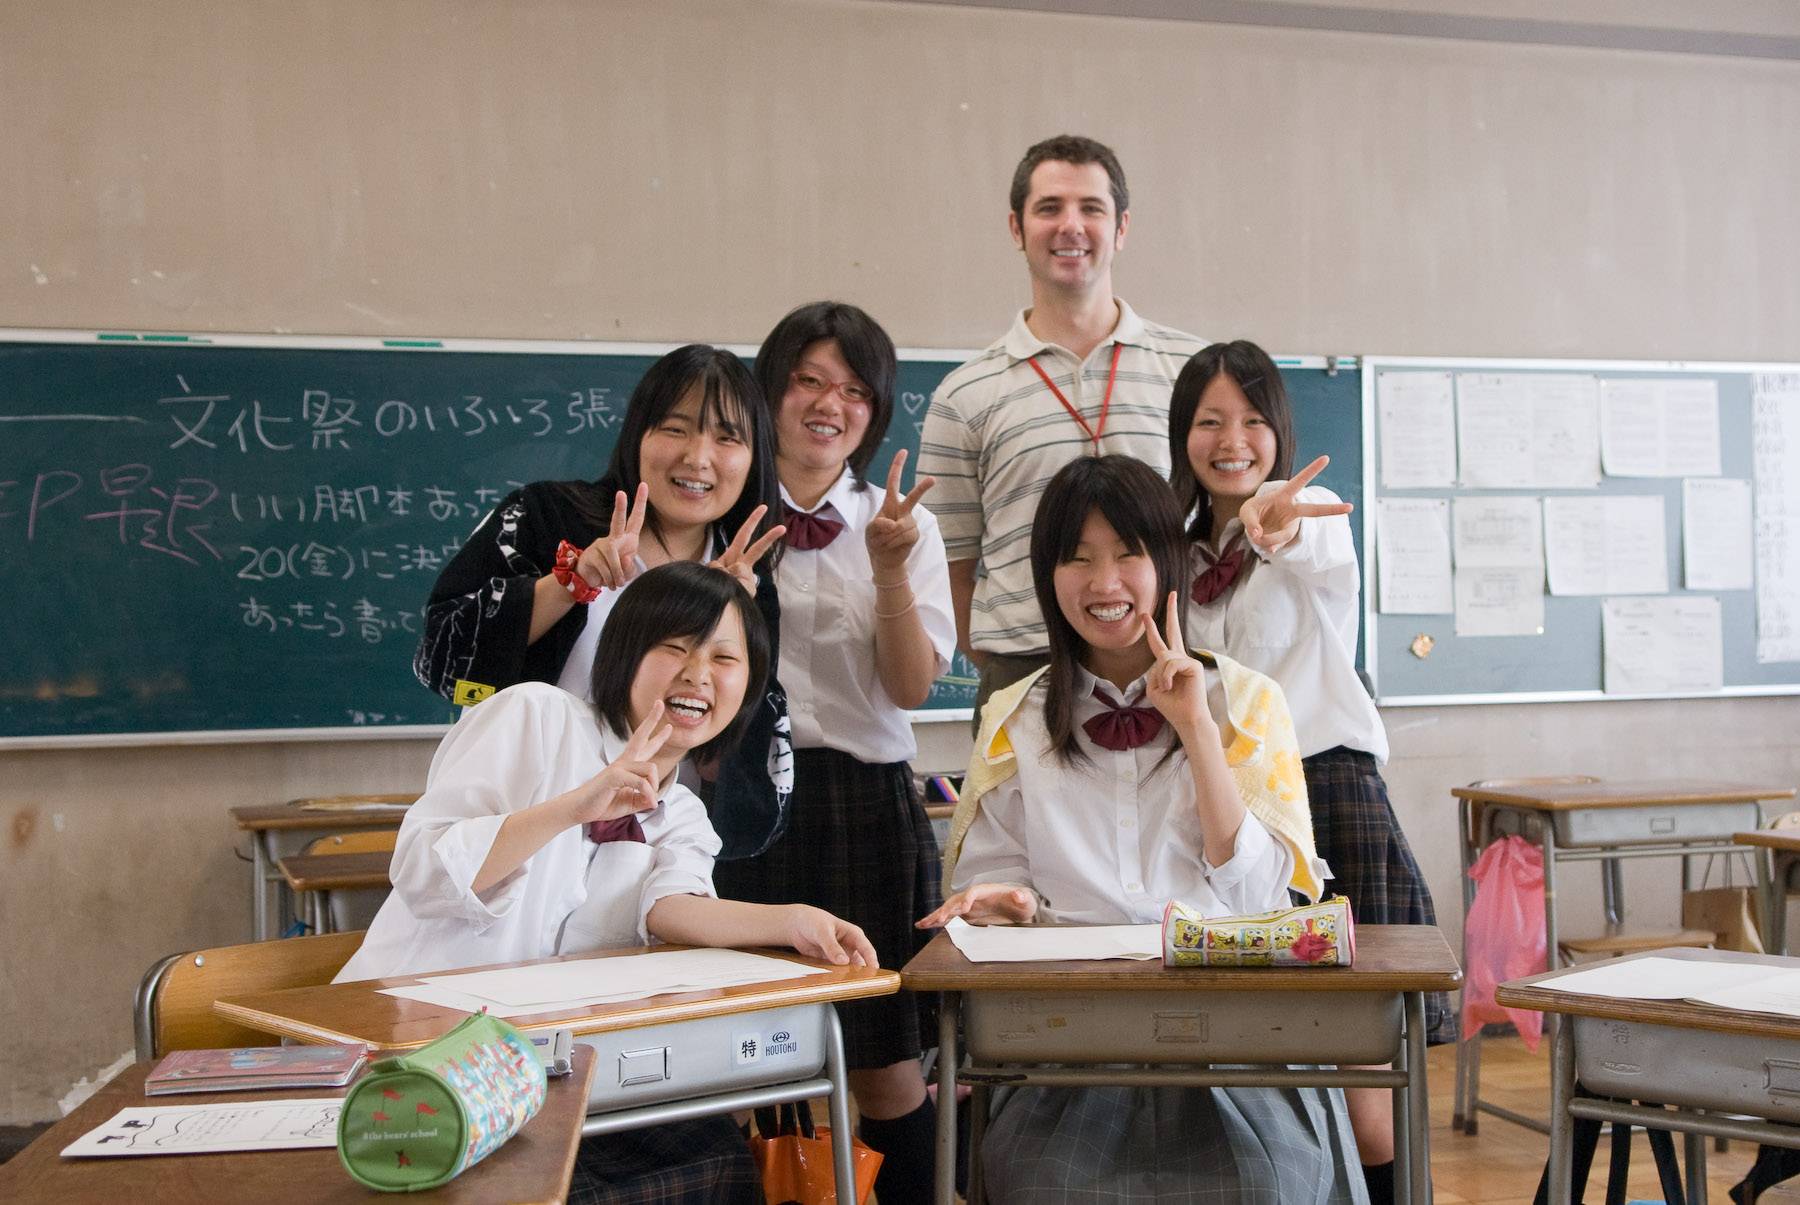 Система образования в японии: особенности среднего и высшего образования